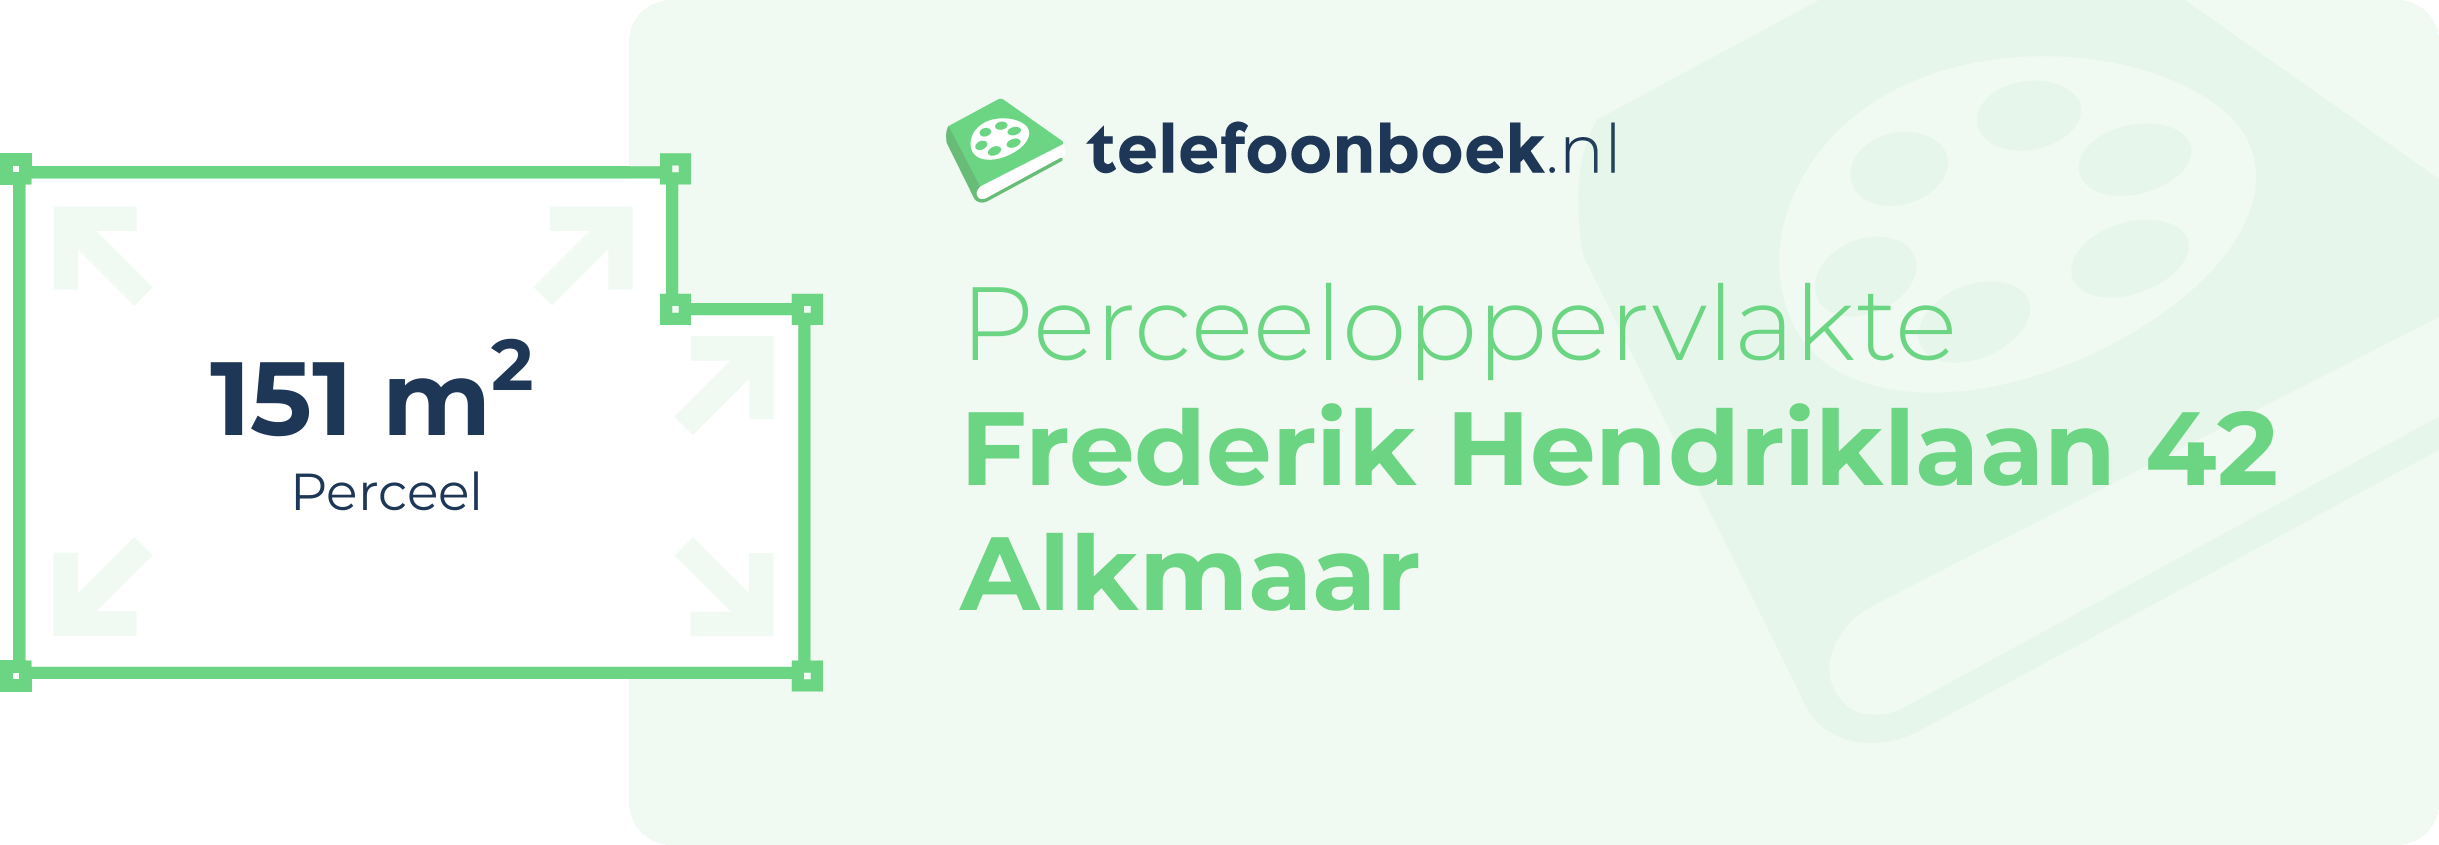 Perceeloppervlakte Frederik Hendriklaan 42 Alkmaar